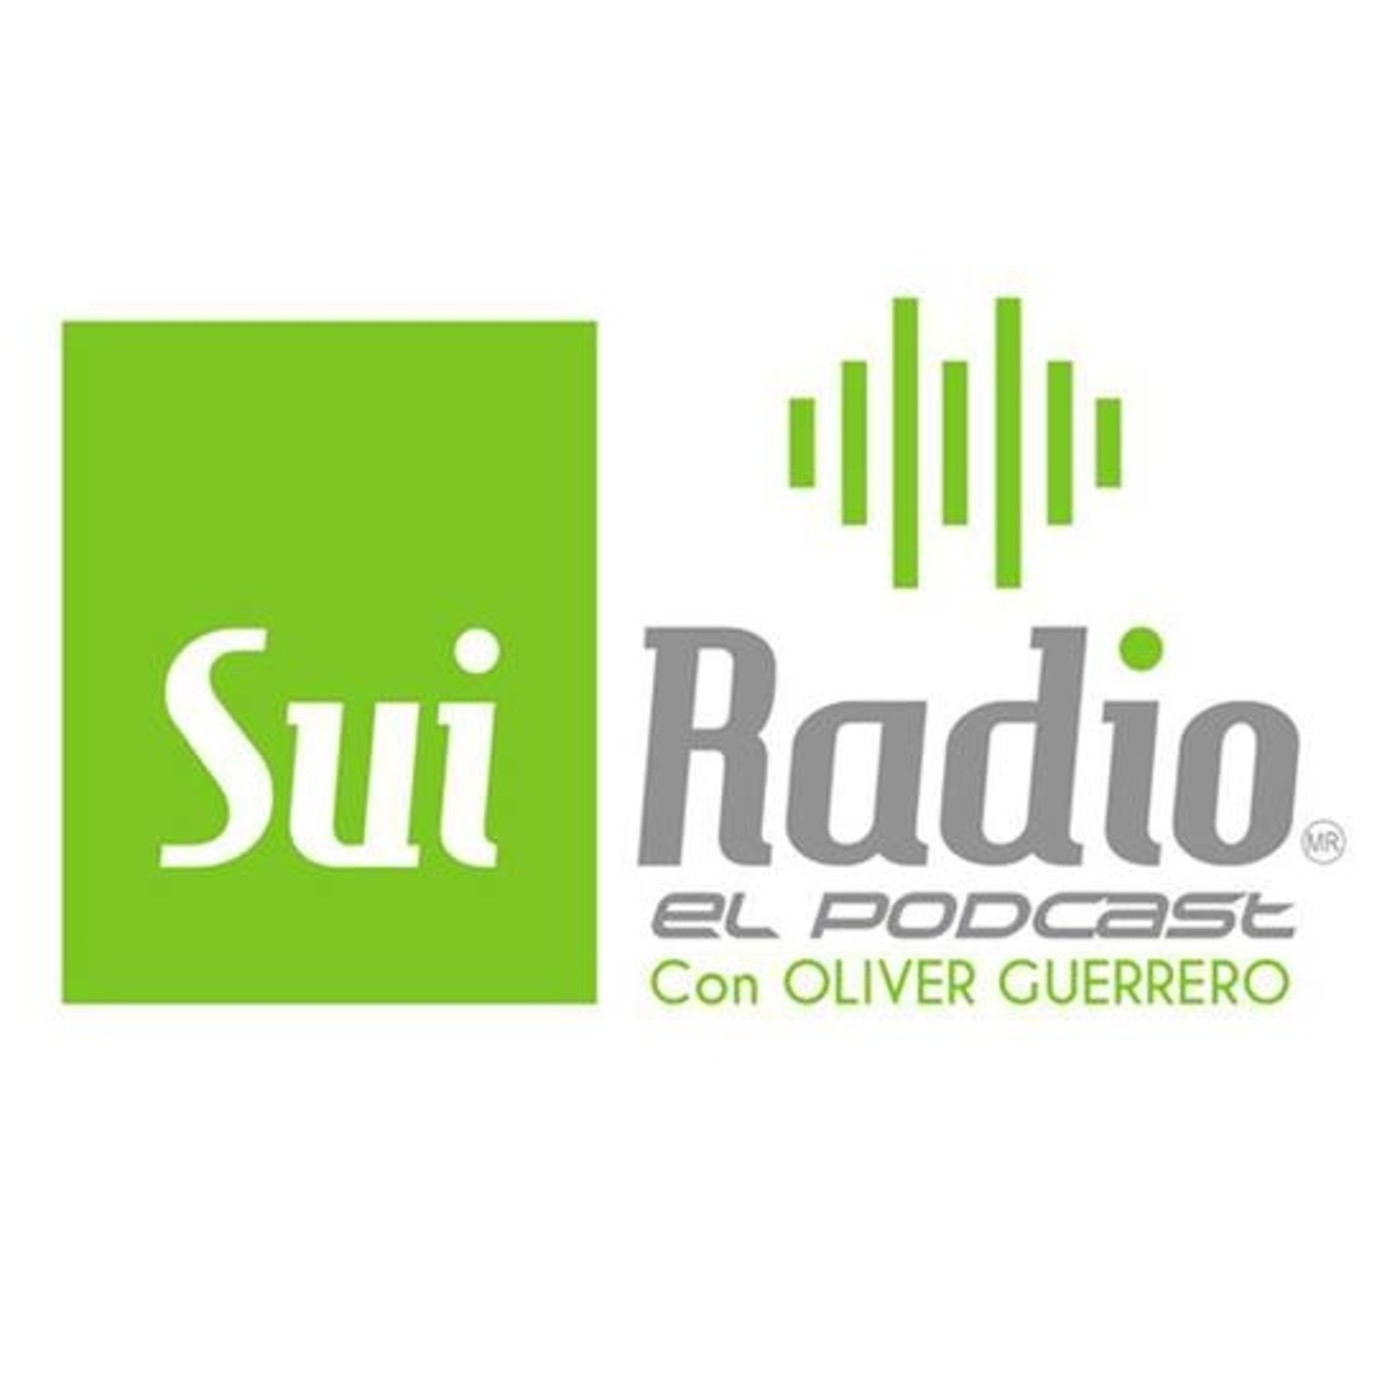 Stereo Rey, Stereo Juventud 99.5 Fm, Recordando su programación/ Sui Radio El Podcast, R&B, Soul,